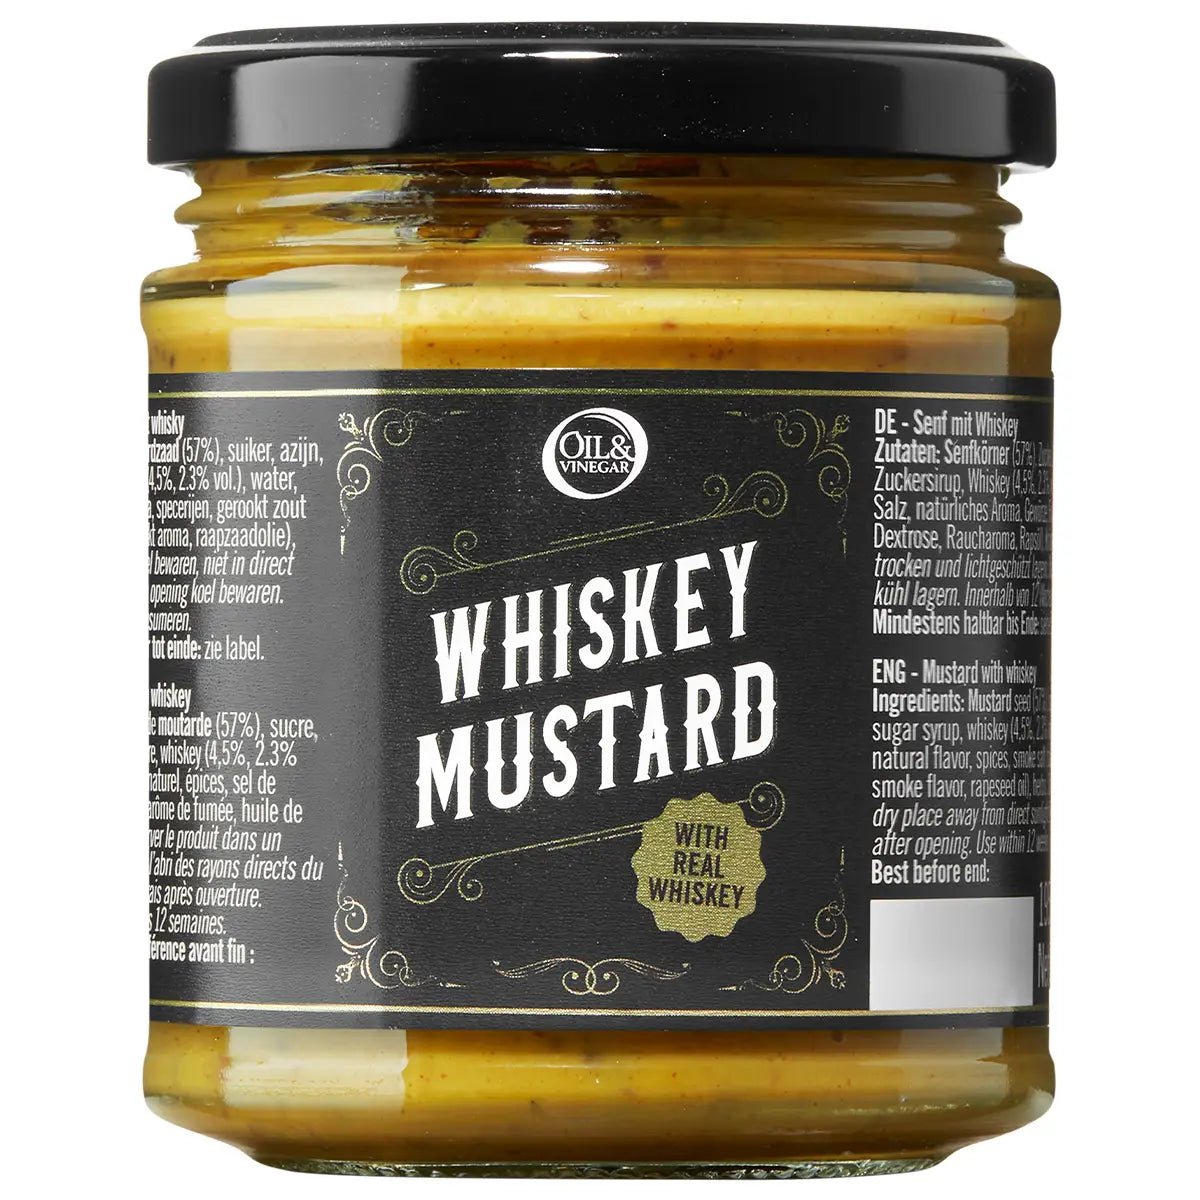 Whisky Mustard